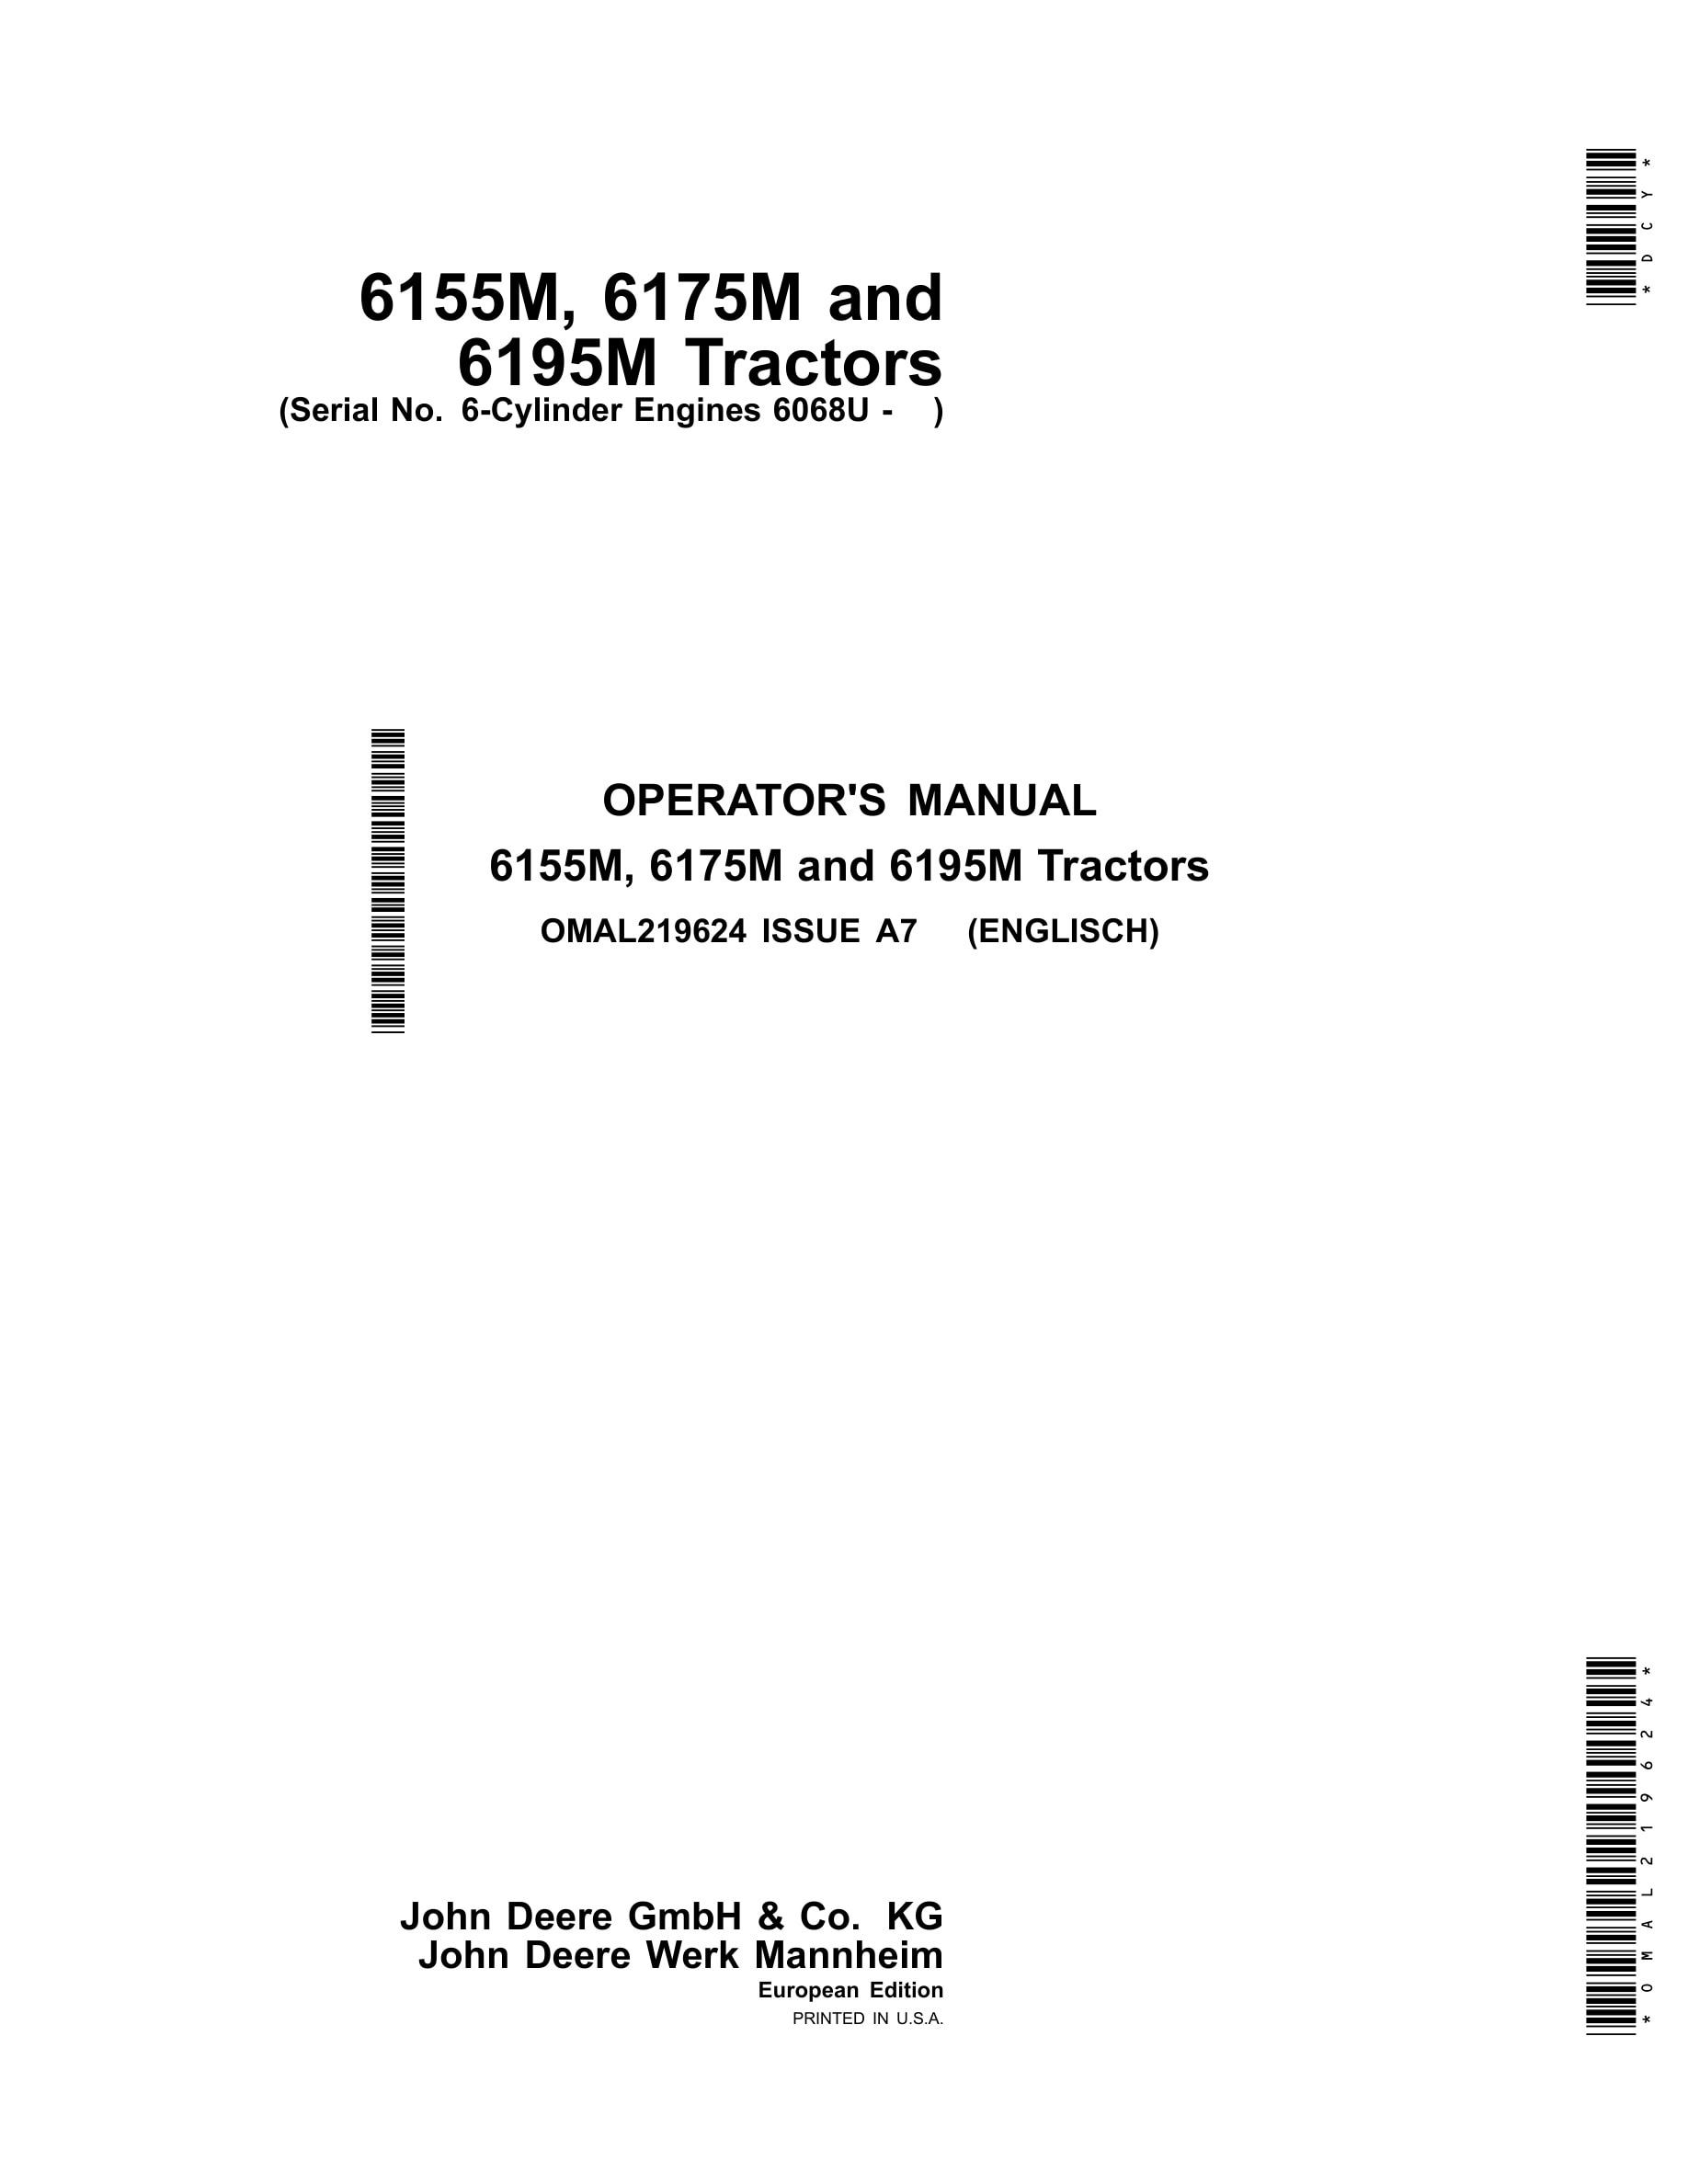 John Deere 6155m, 6175m And 6195m Tractors Operator Manuals OMAL219624-1